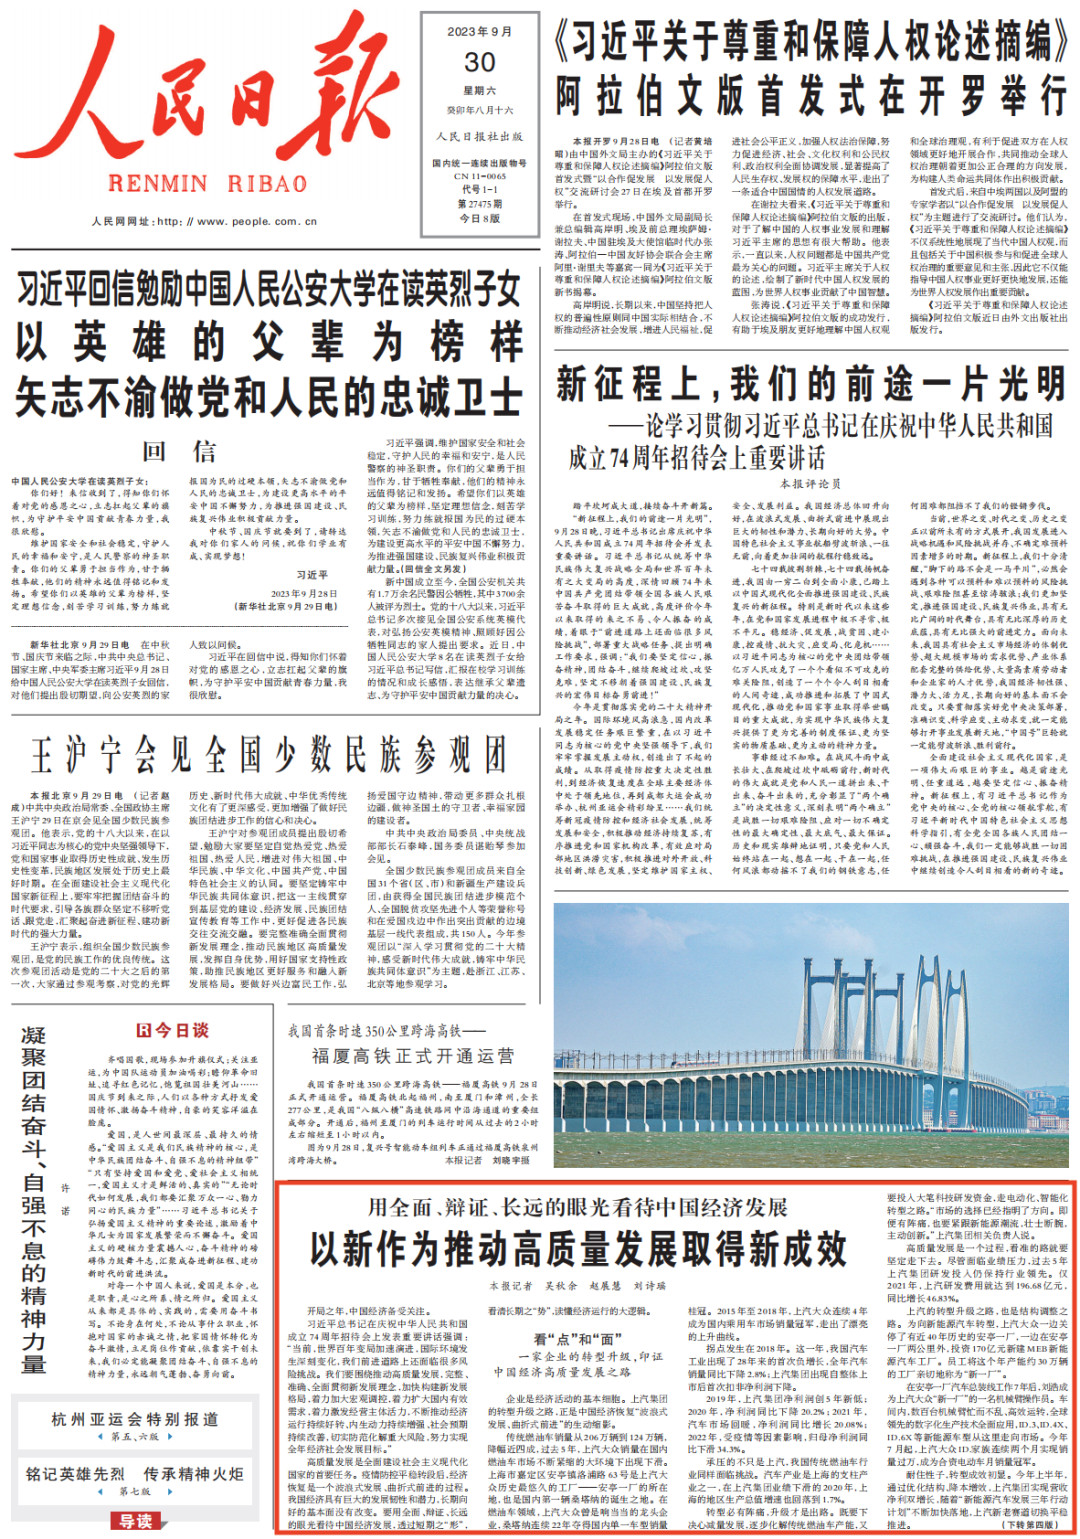 澳彩大白菜再看中国经济恢复“波浪式发展、曲折式前进”J9九游会官方网站